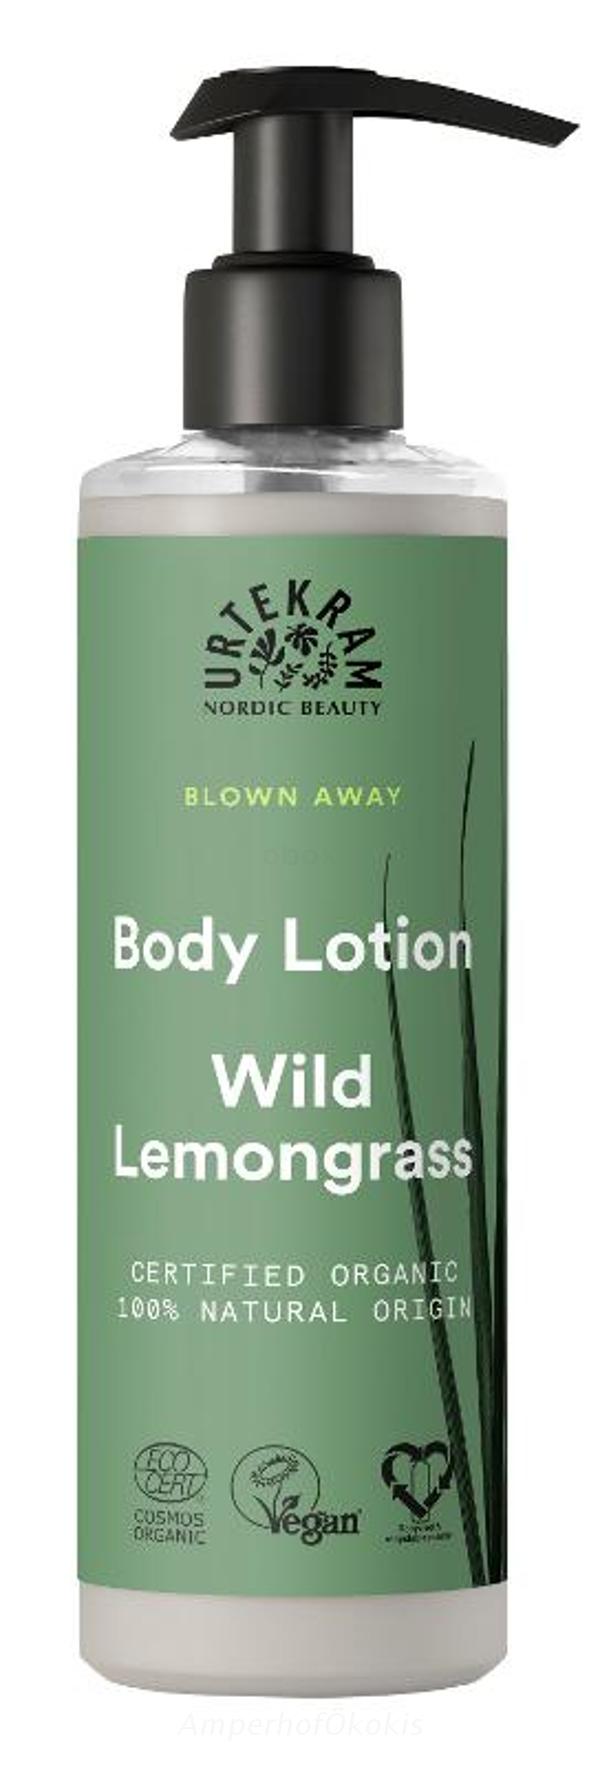 Produktfoto zu Body Lotion Wild Lemongrass 245 ml